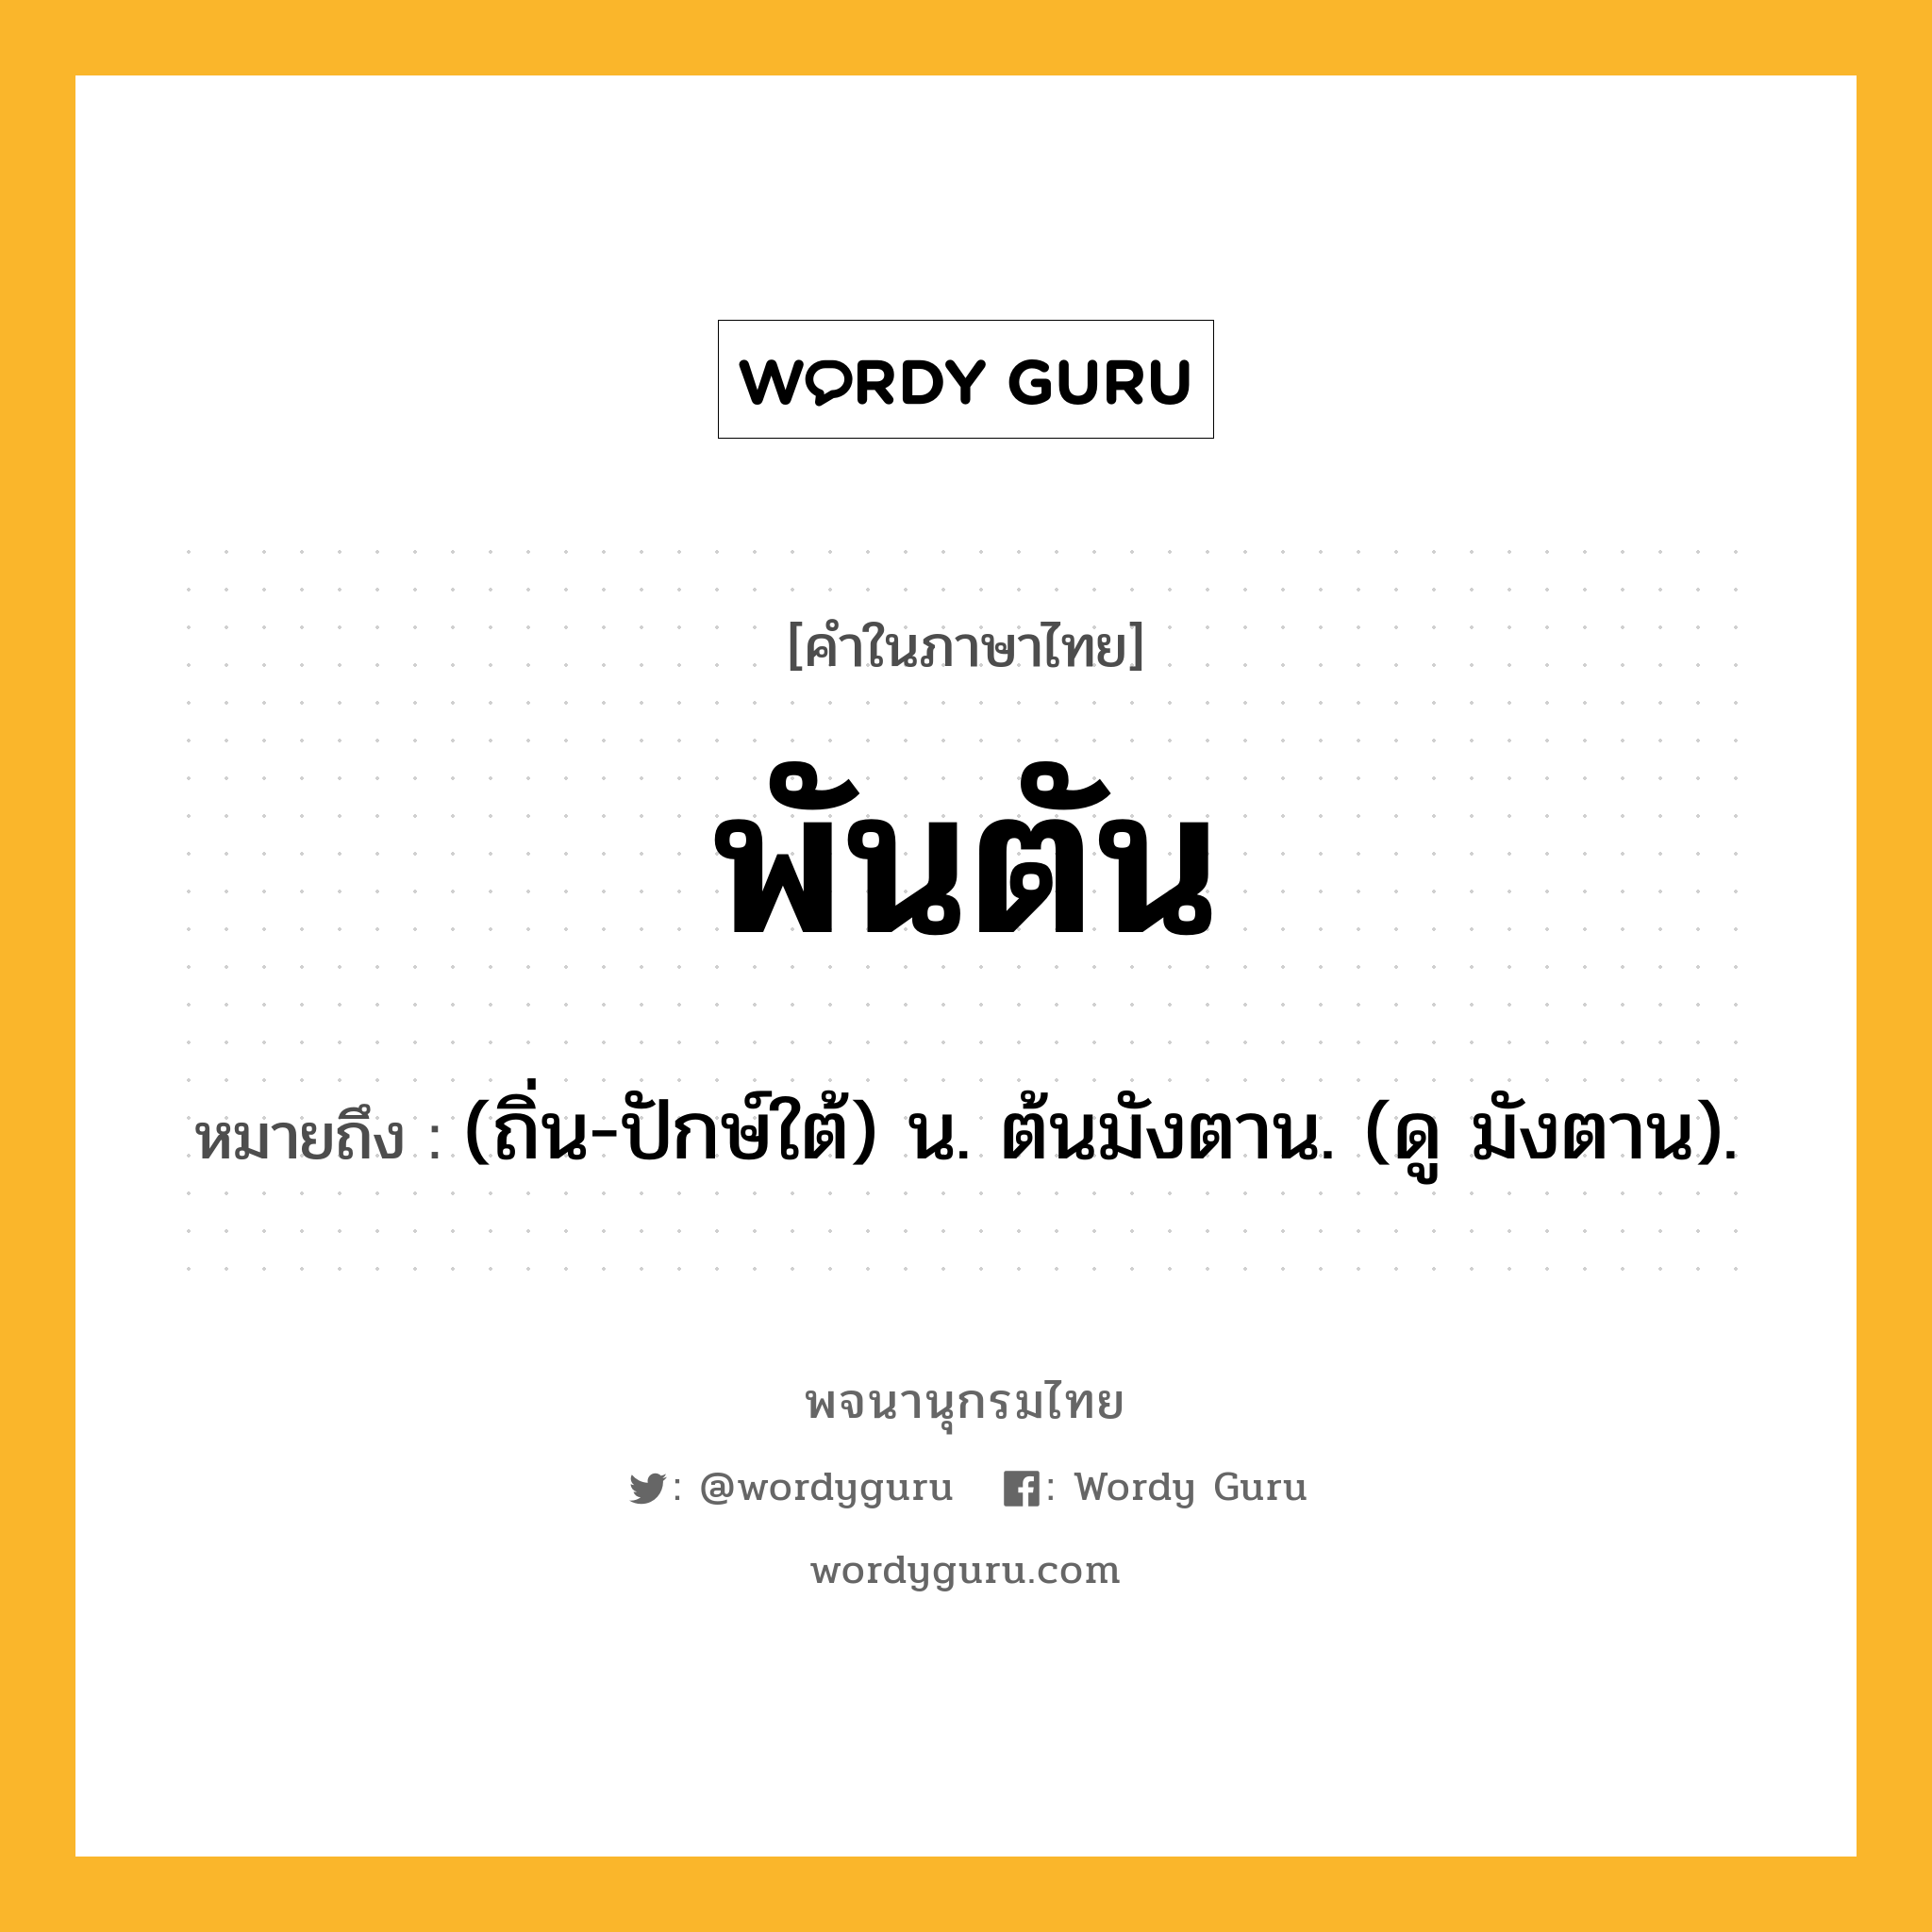 พันตัน ความหมาย หมายถึงอะไร?, คำในภาษาไทย พันตัน หมายถึง (ถิ่น-ปักษ์ใต้) น. ต้นมังตาน. (ดู มังตาน).